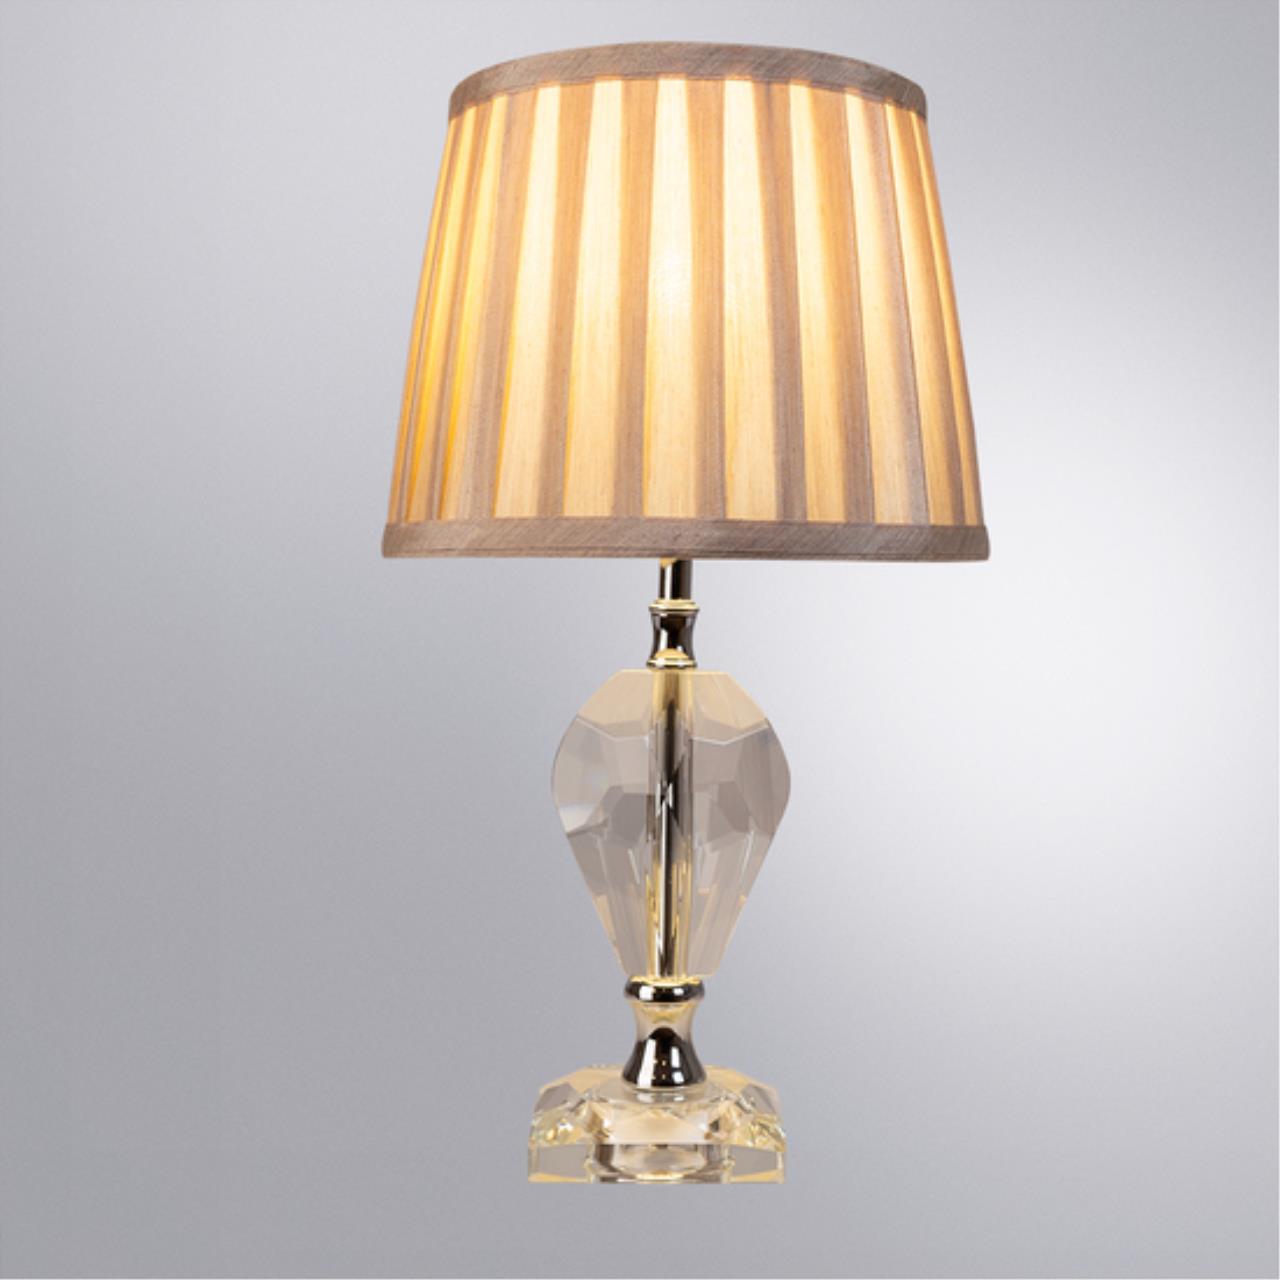 Интерьерная настольная лампа Arte lamp A4024LT-1CC СВЕТИЛЬНИК НАСТОЛЬНЫЙ